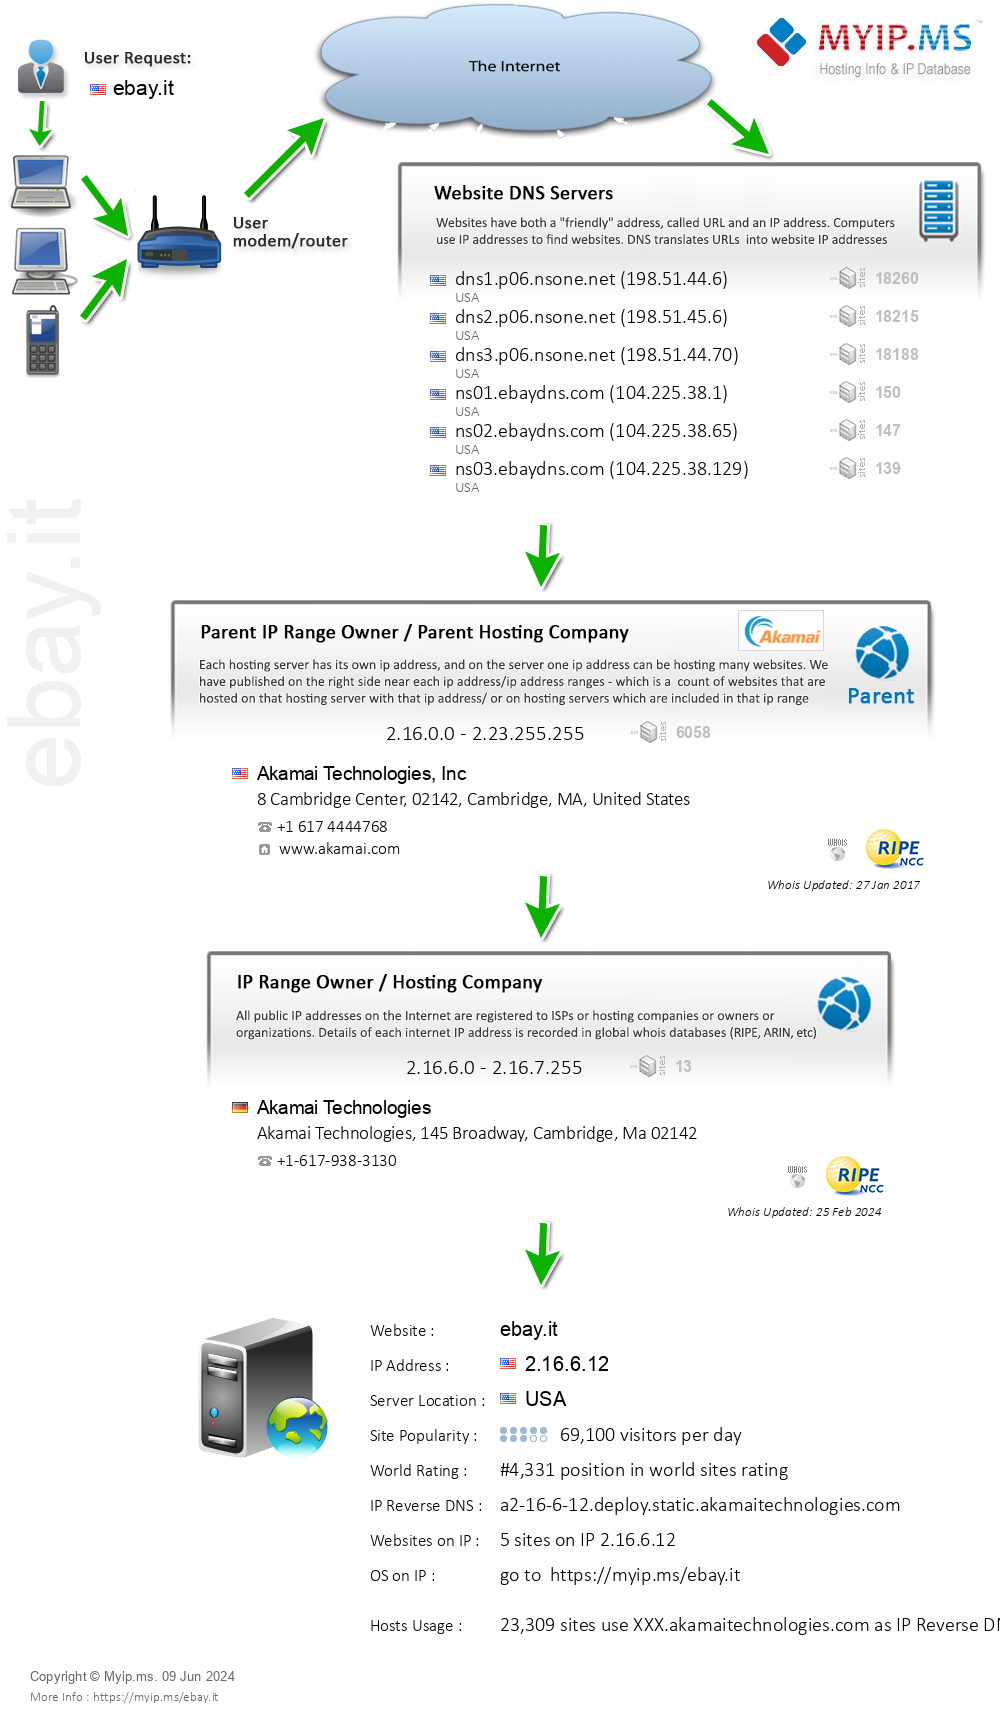 Ebay.it - Website Hosting Visual IP Diagram